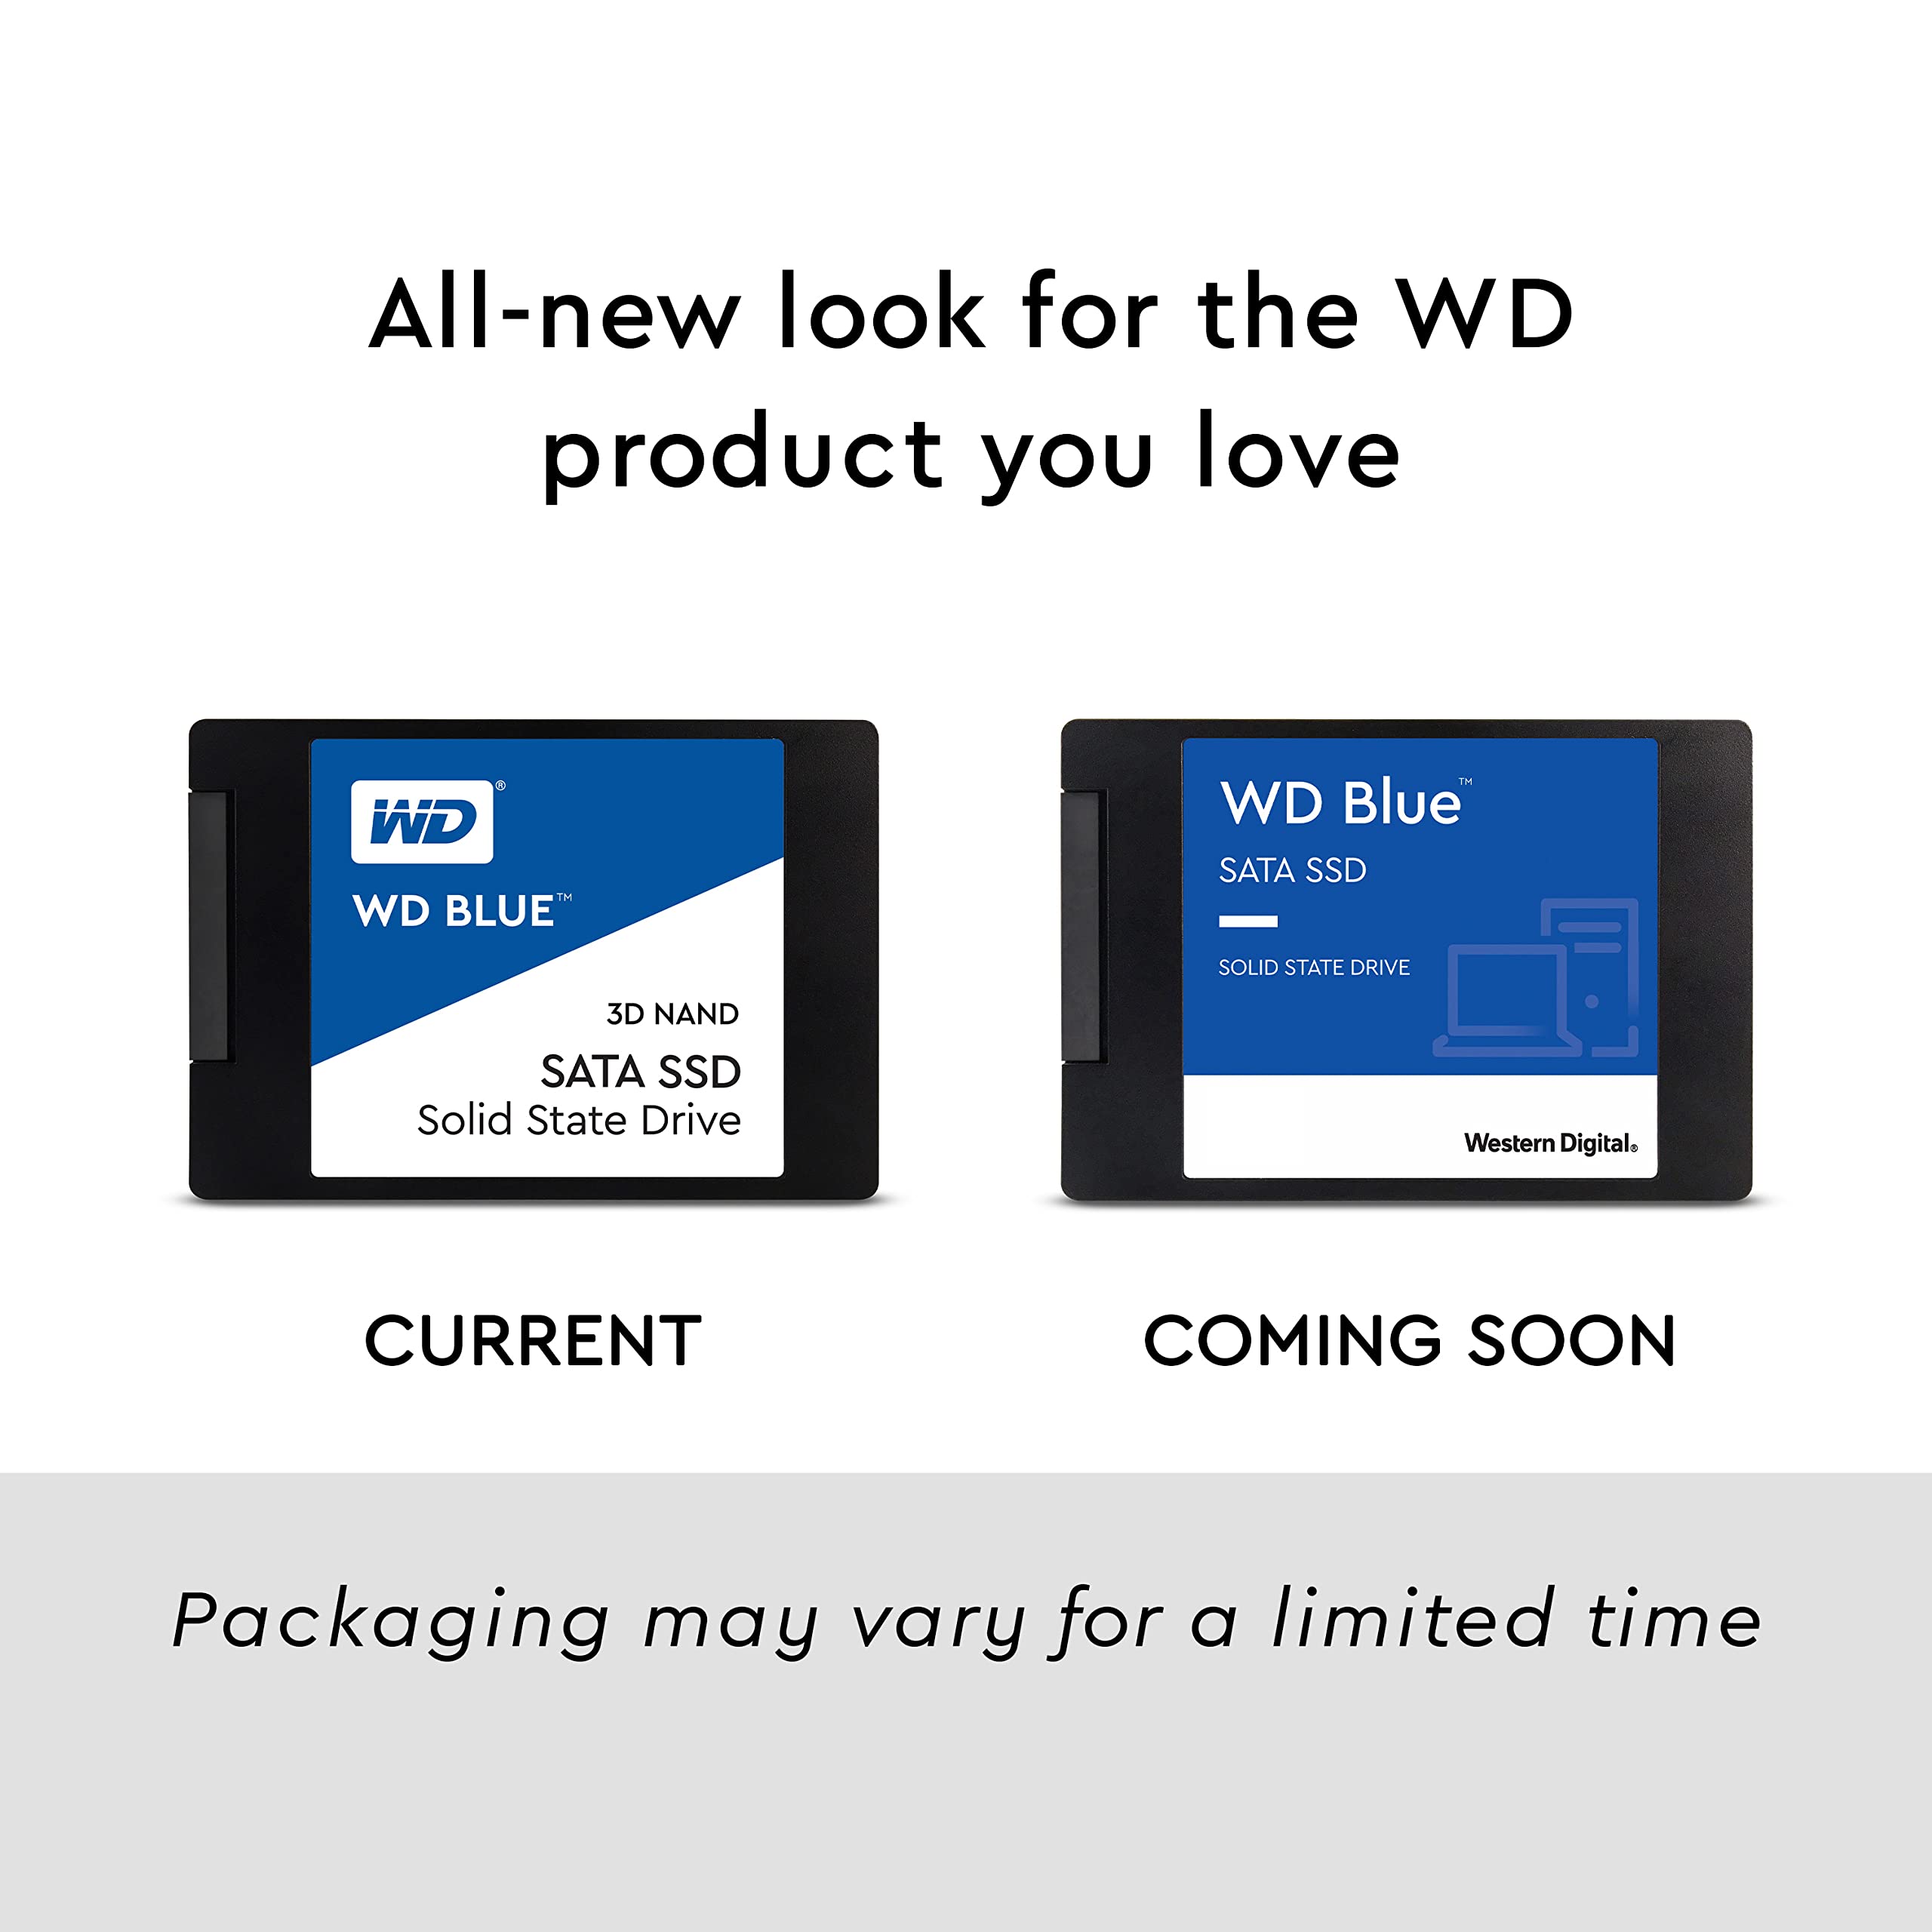 Western Digital 250GB WD Blue 3D NAND Internal PC SSD - SATA III 6 Gb/s, 2.5